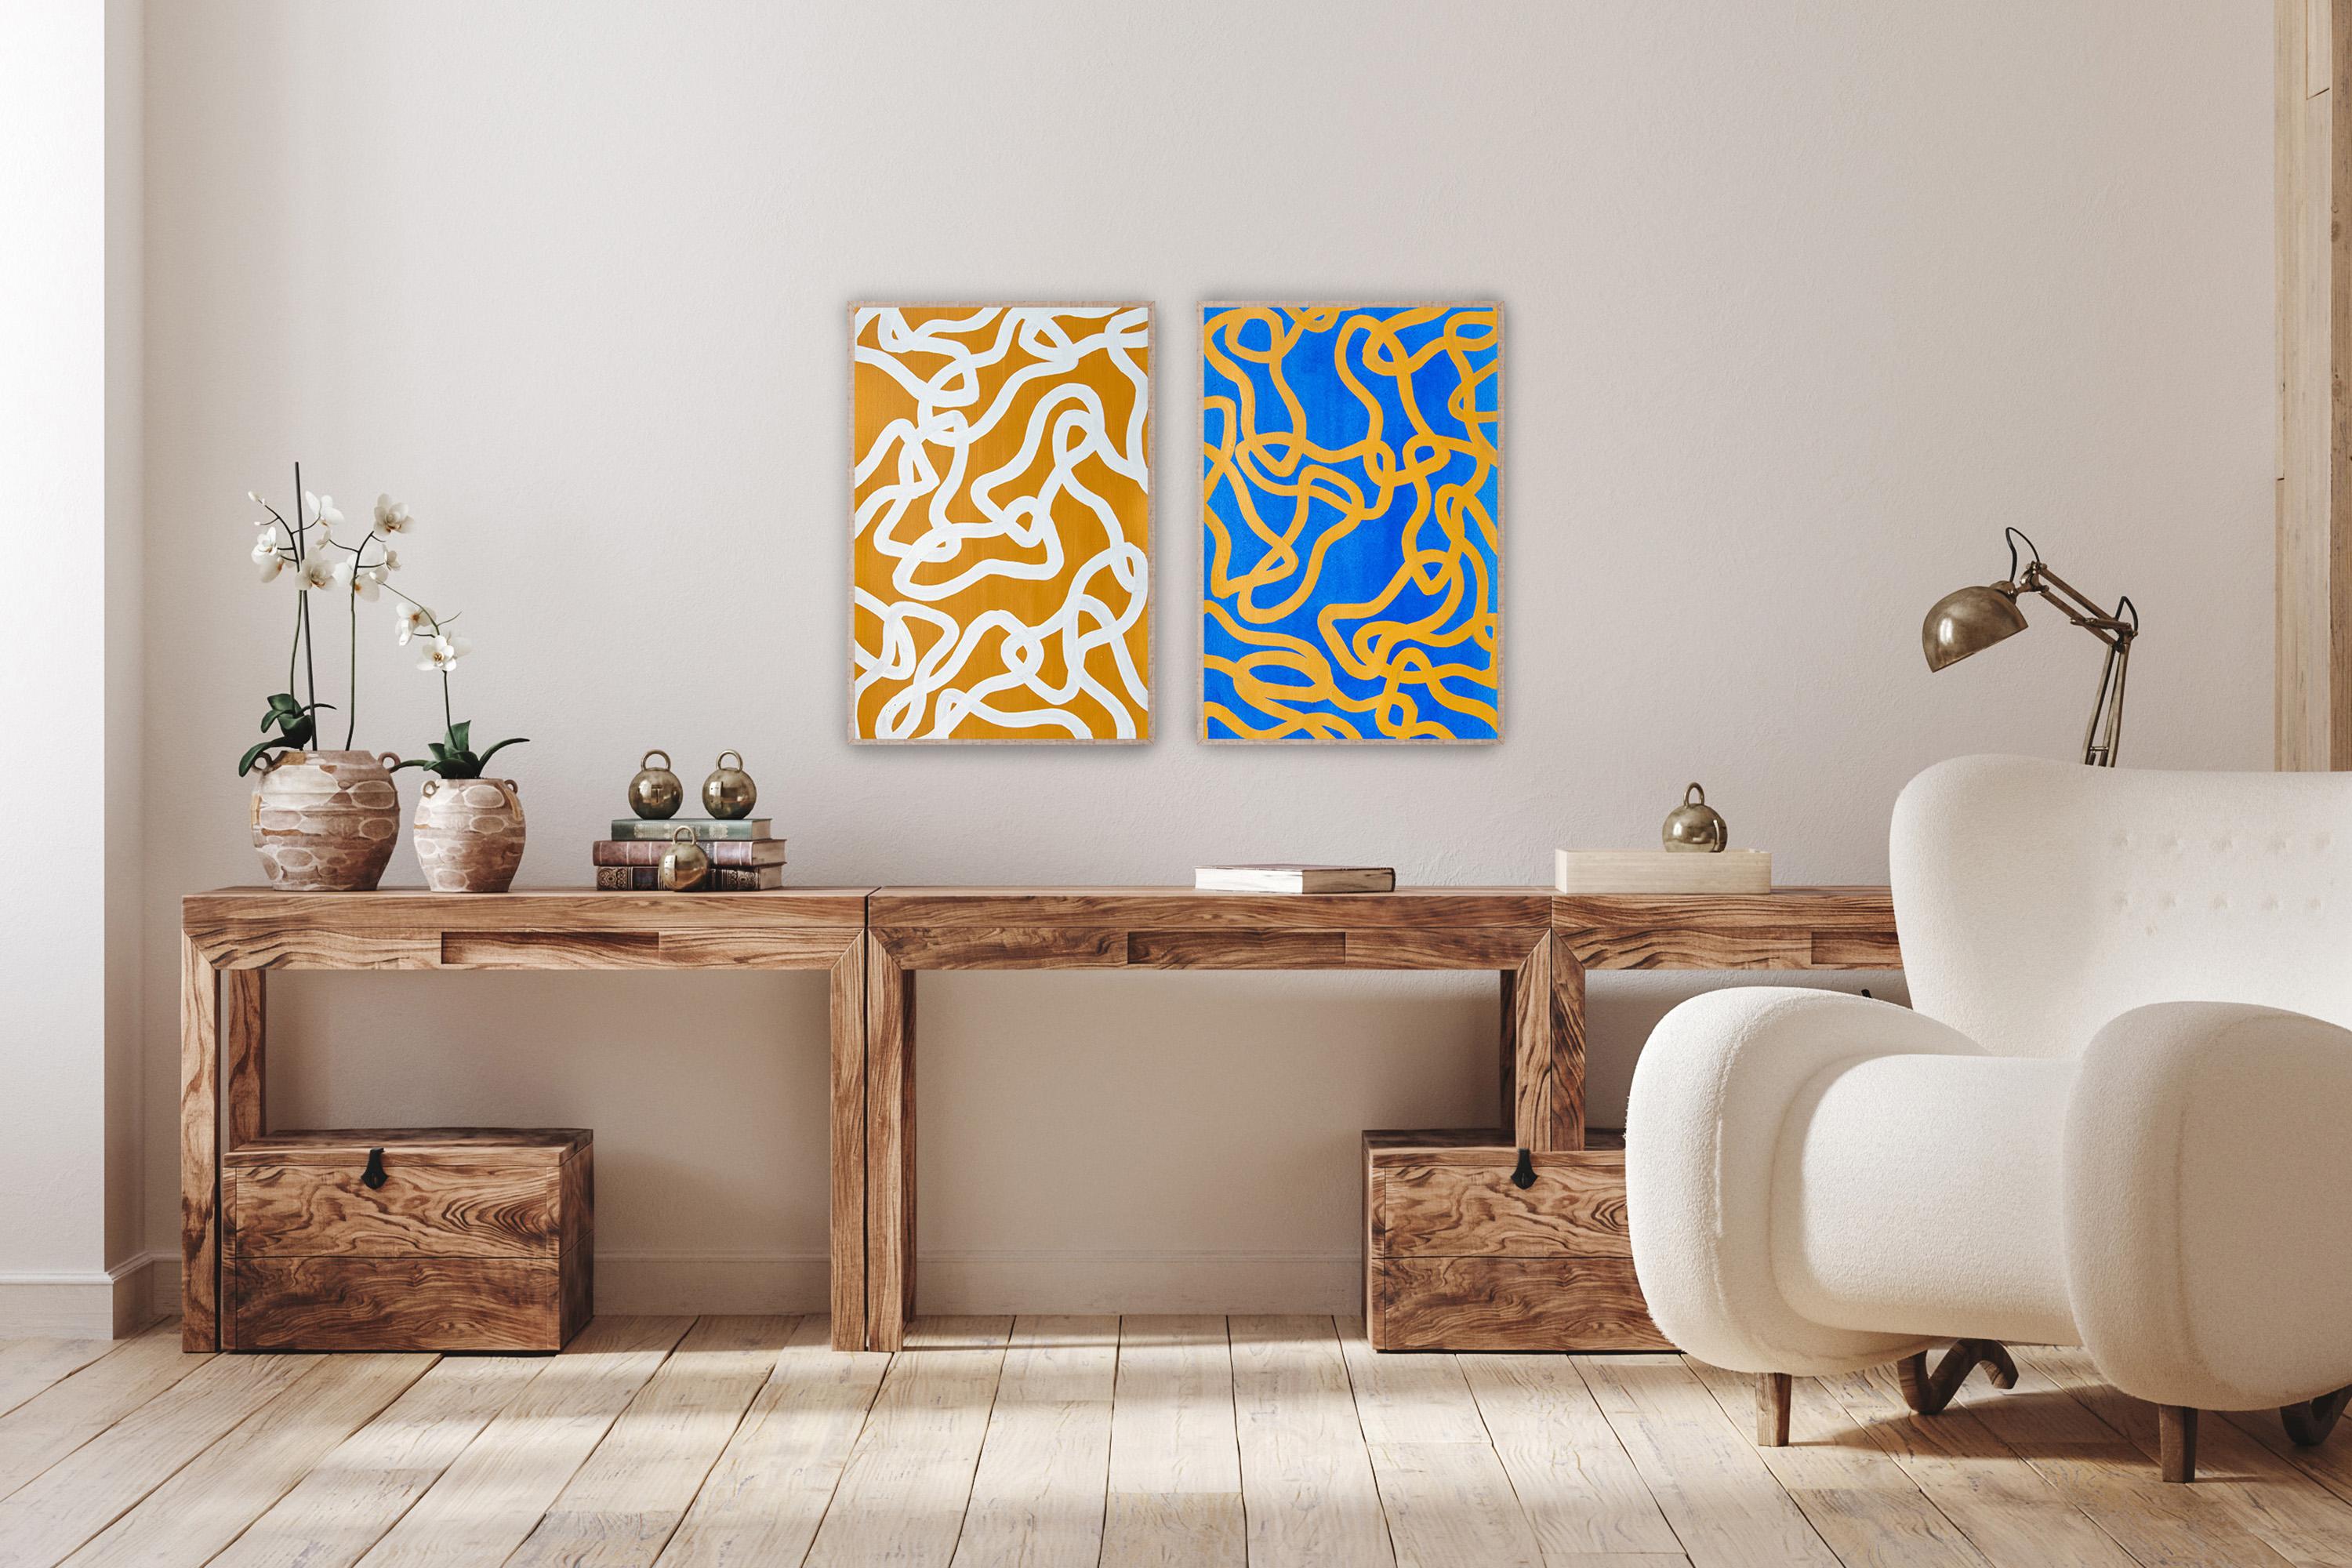 Salty N 2 & 4, Diptyque jaune et bleu, poissons abstraits superposés, méditerranéen - Abstrait Painting par Enric Servera